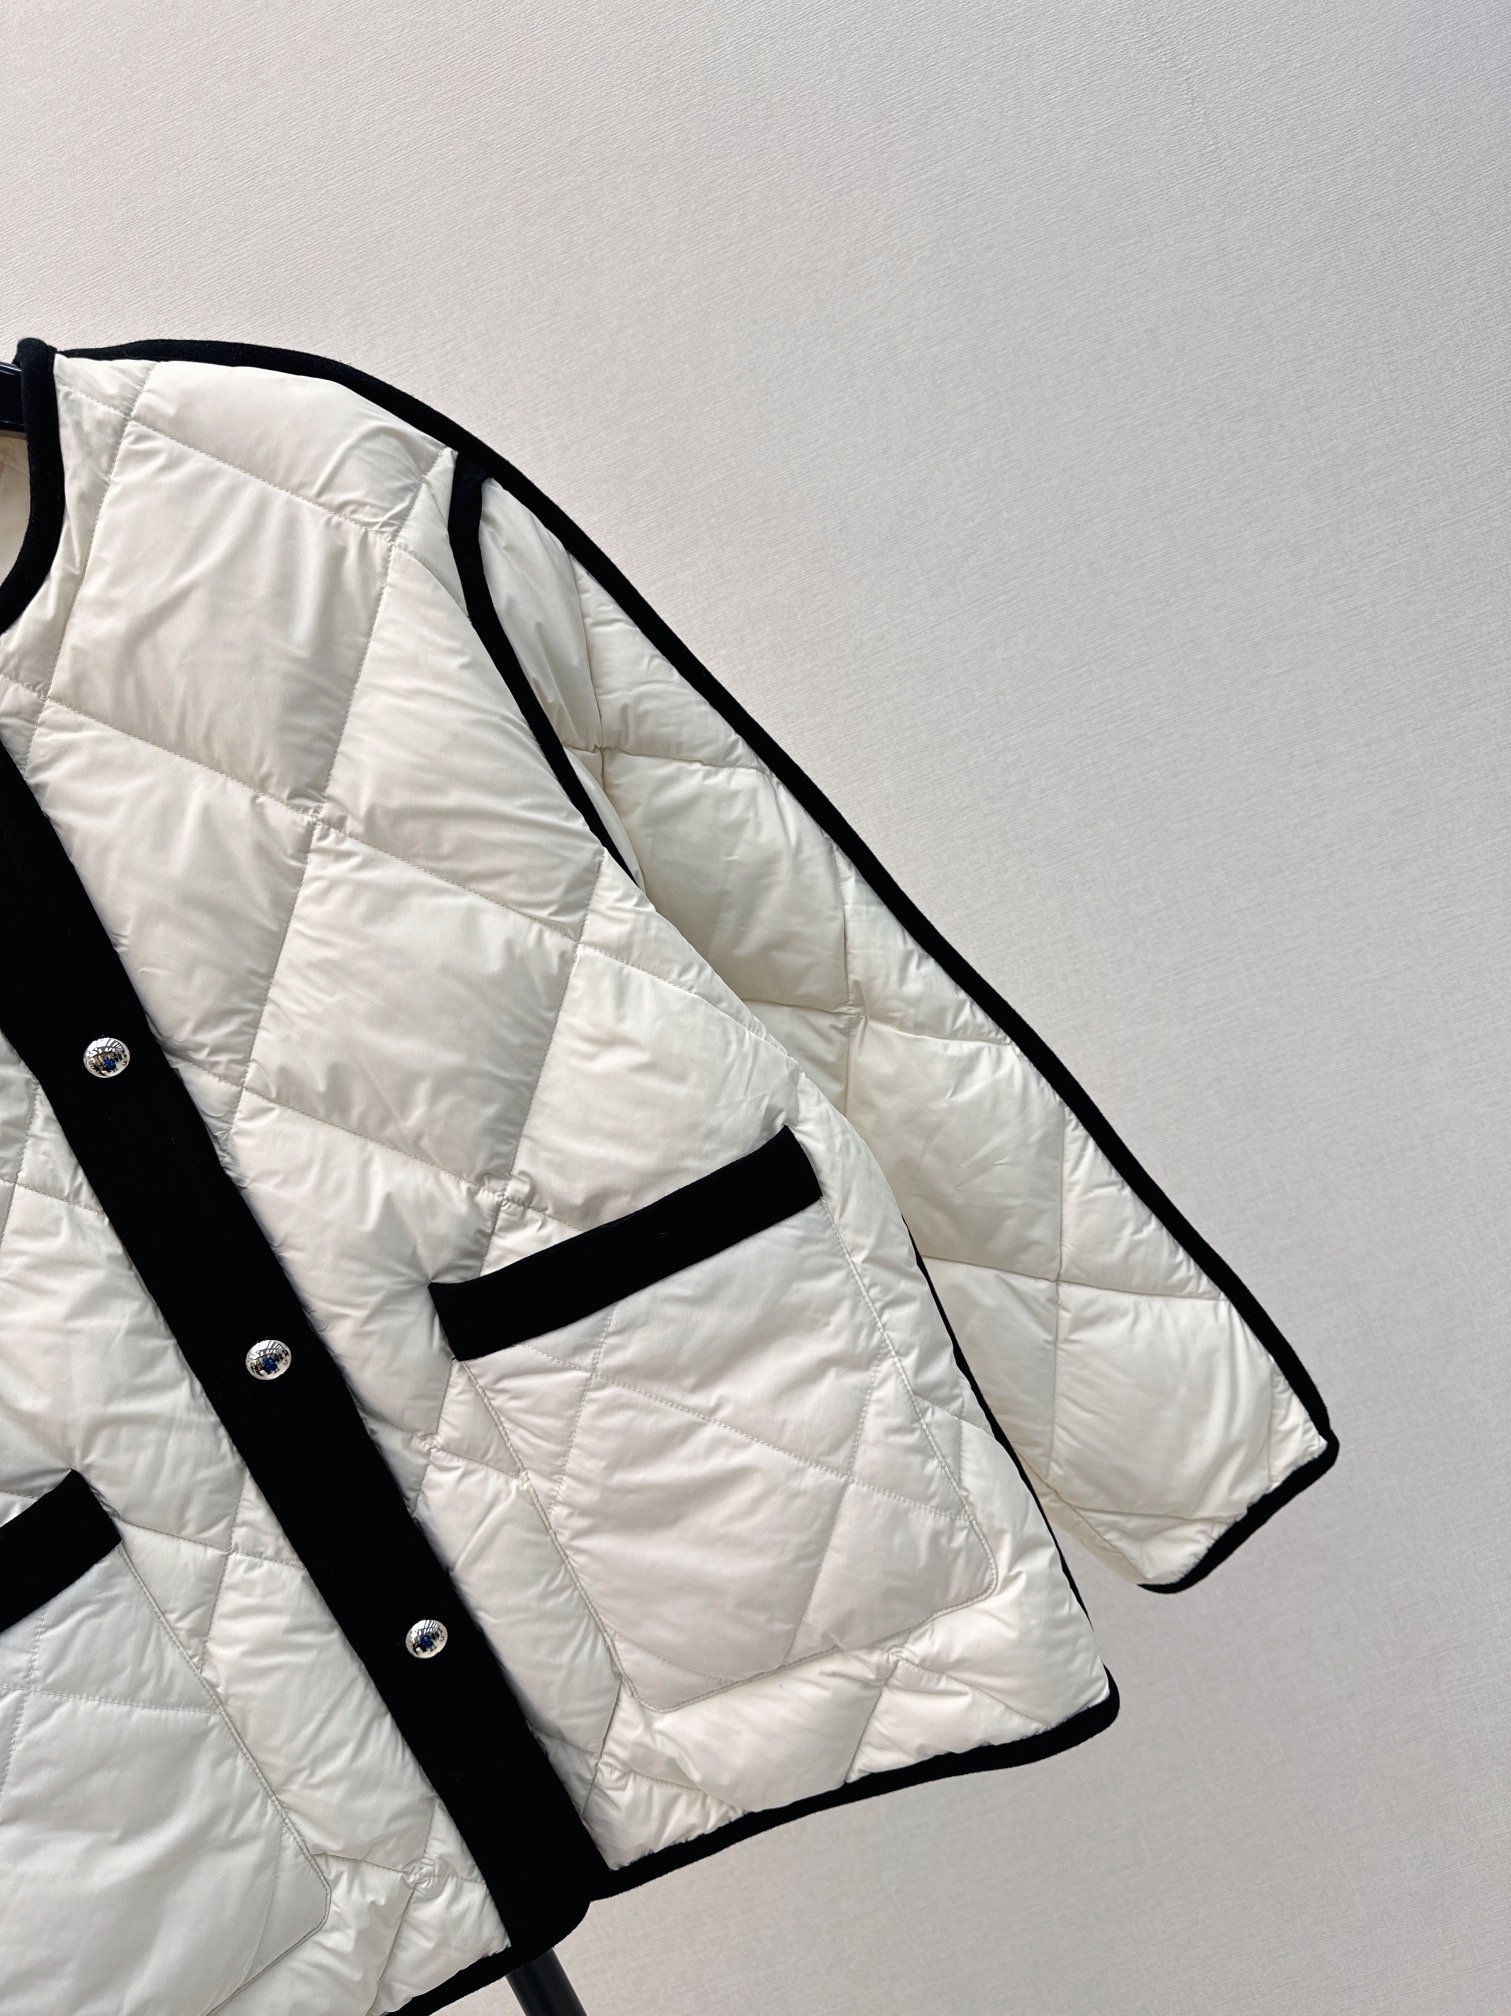 时髦小众设计23Ss秋冬最新款经典黑白装饰菱格纹羽绒外套温暖氛围感怕冷的宝贝可以入手了经典的菱格纹做法上